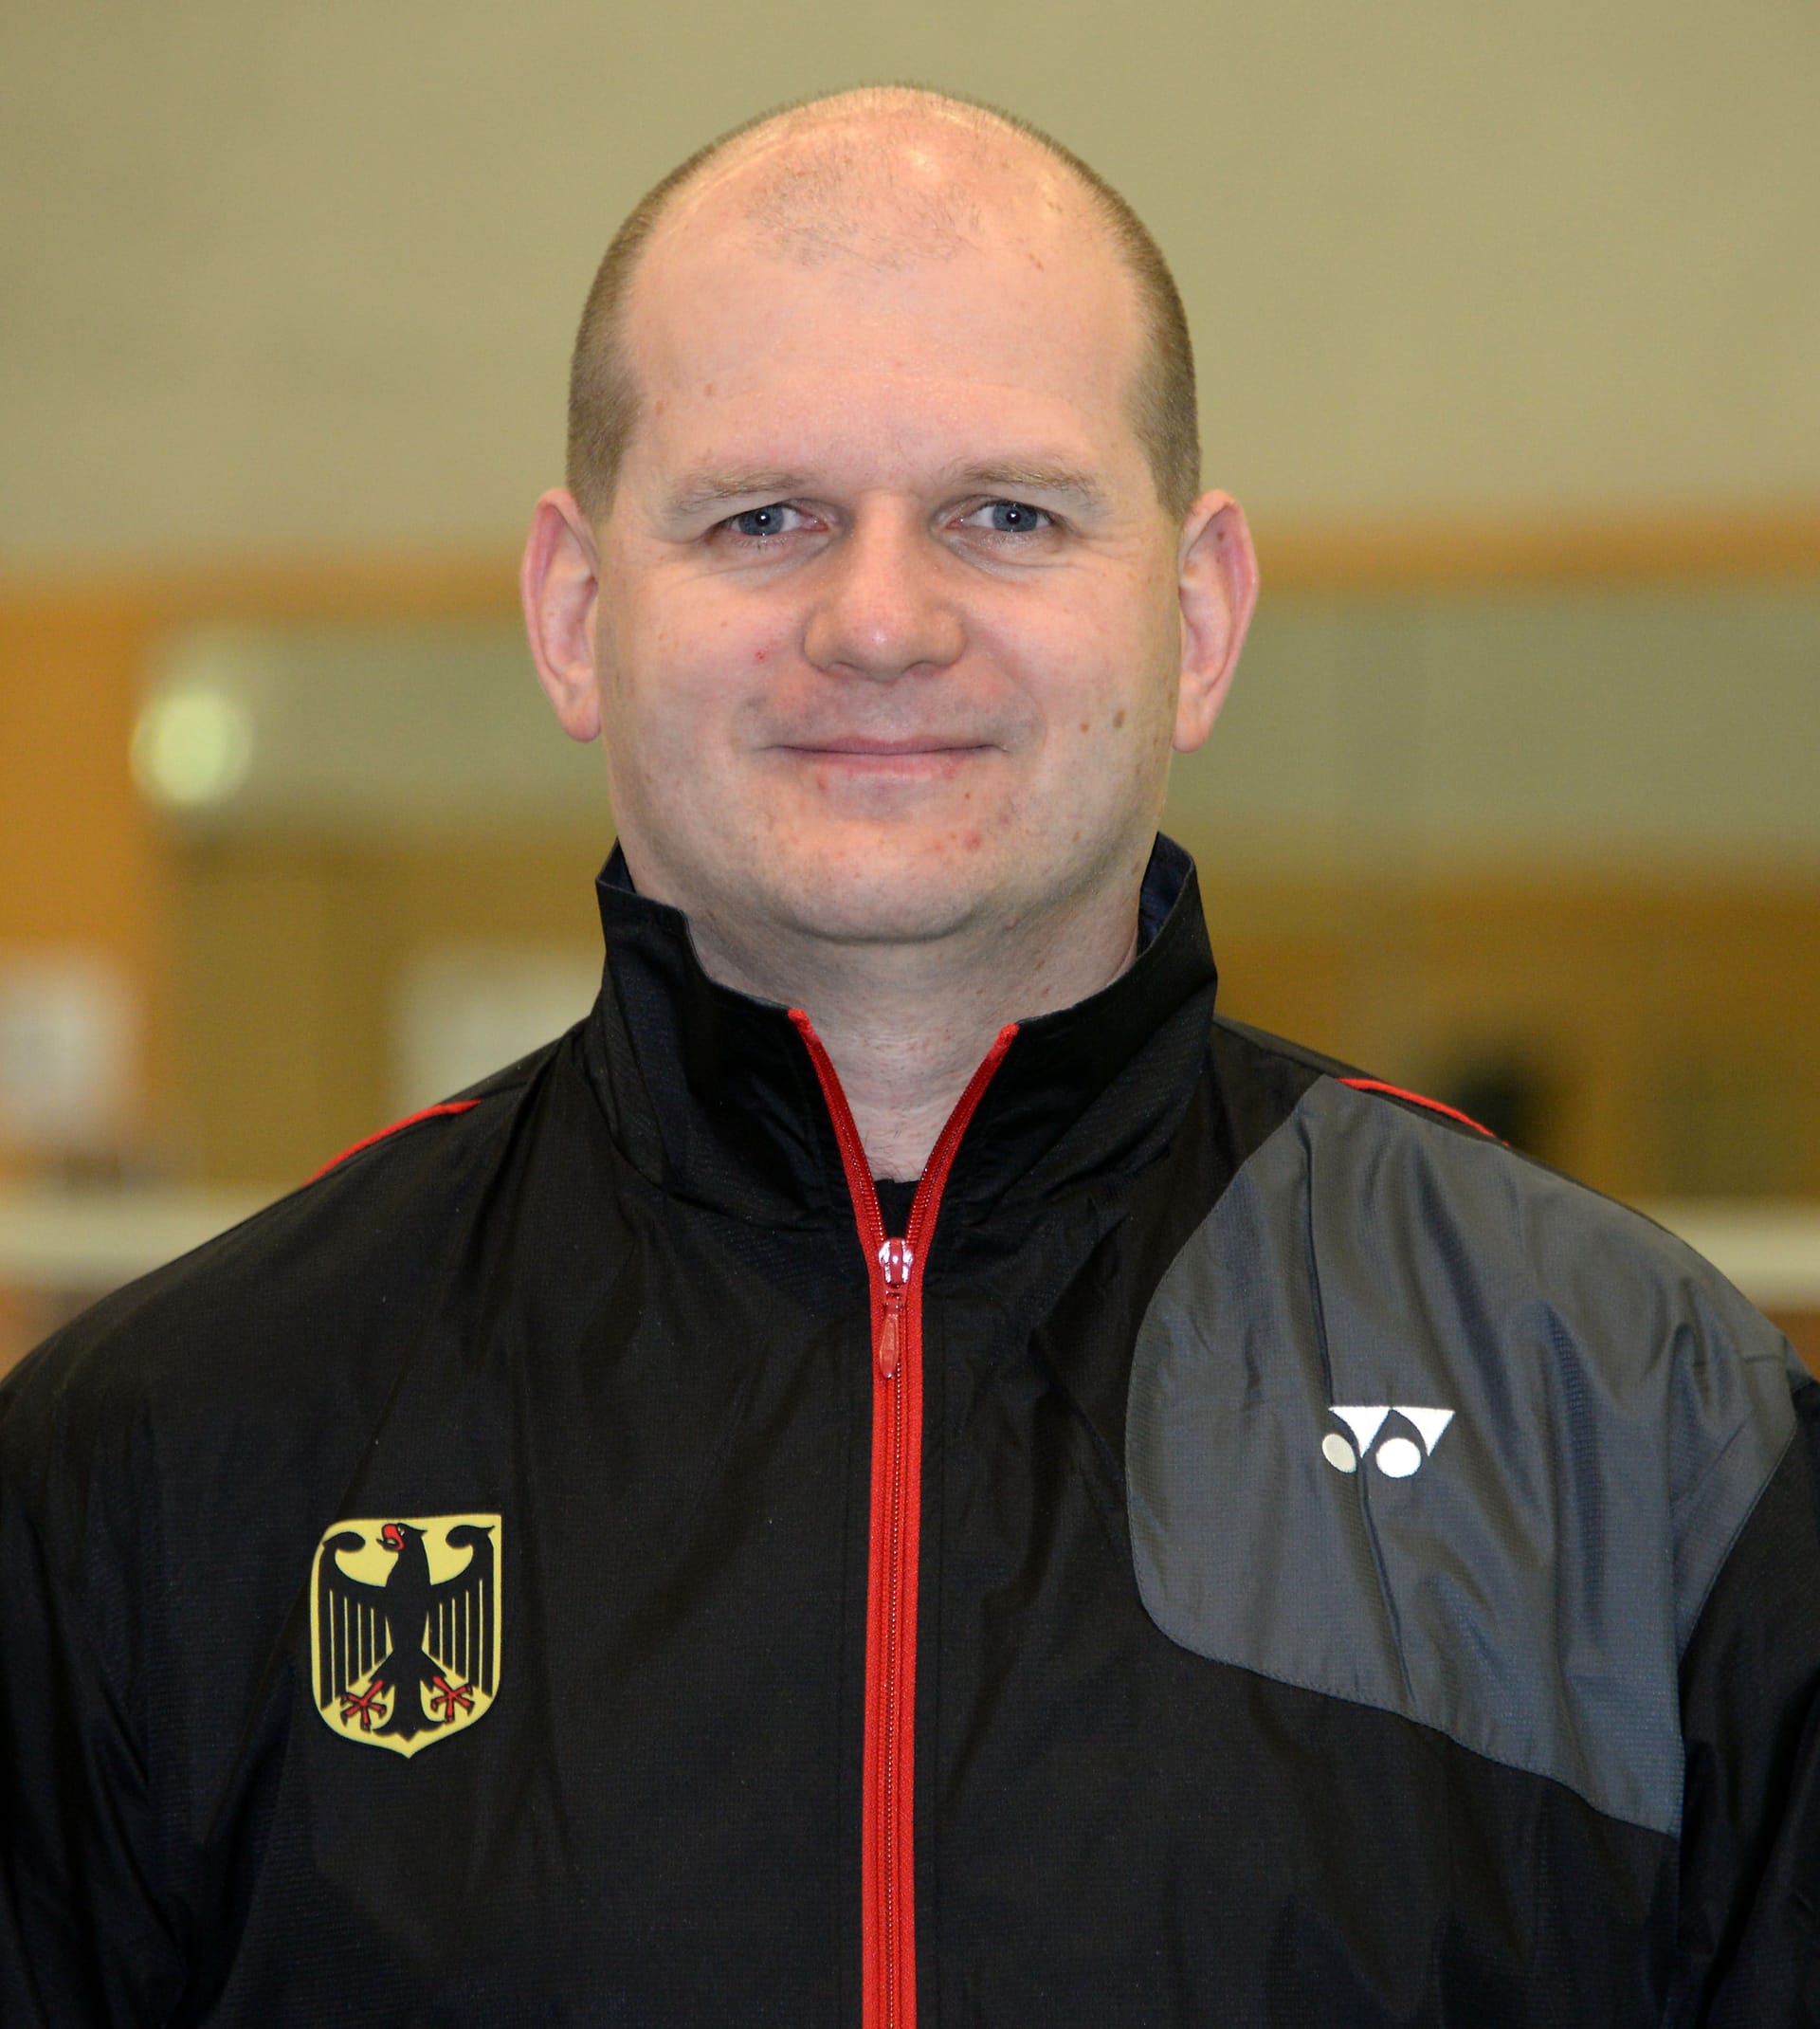 Holger Hasse: Der frühere Badminton-Trainer ist heute Präsident des Berufsverbands der Trainer und Trainerinnen im deutschen Sport (BVTDS).